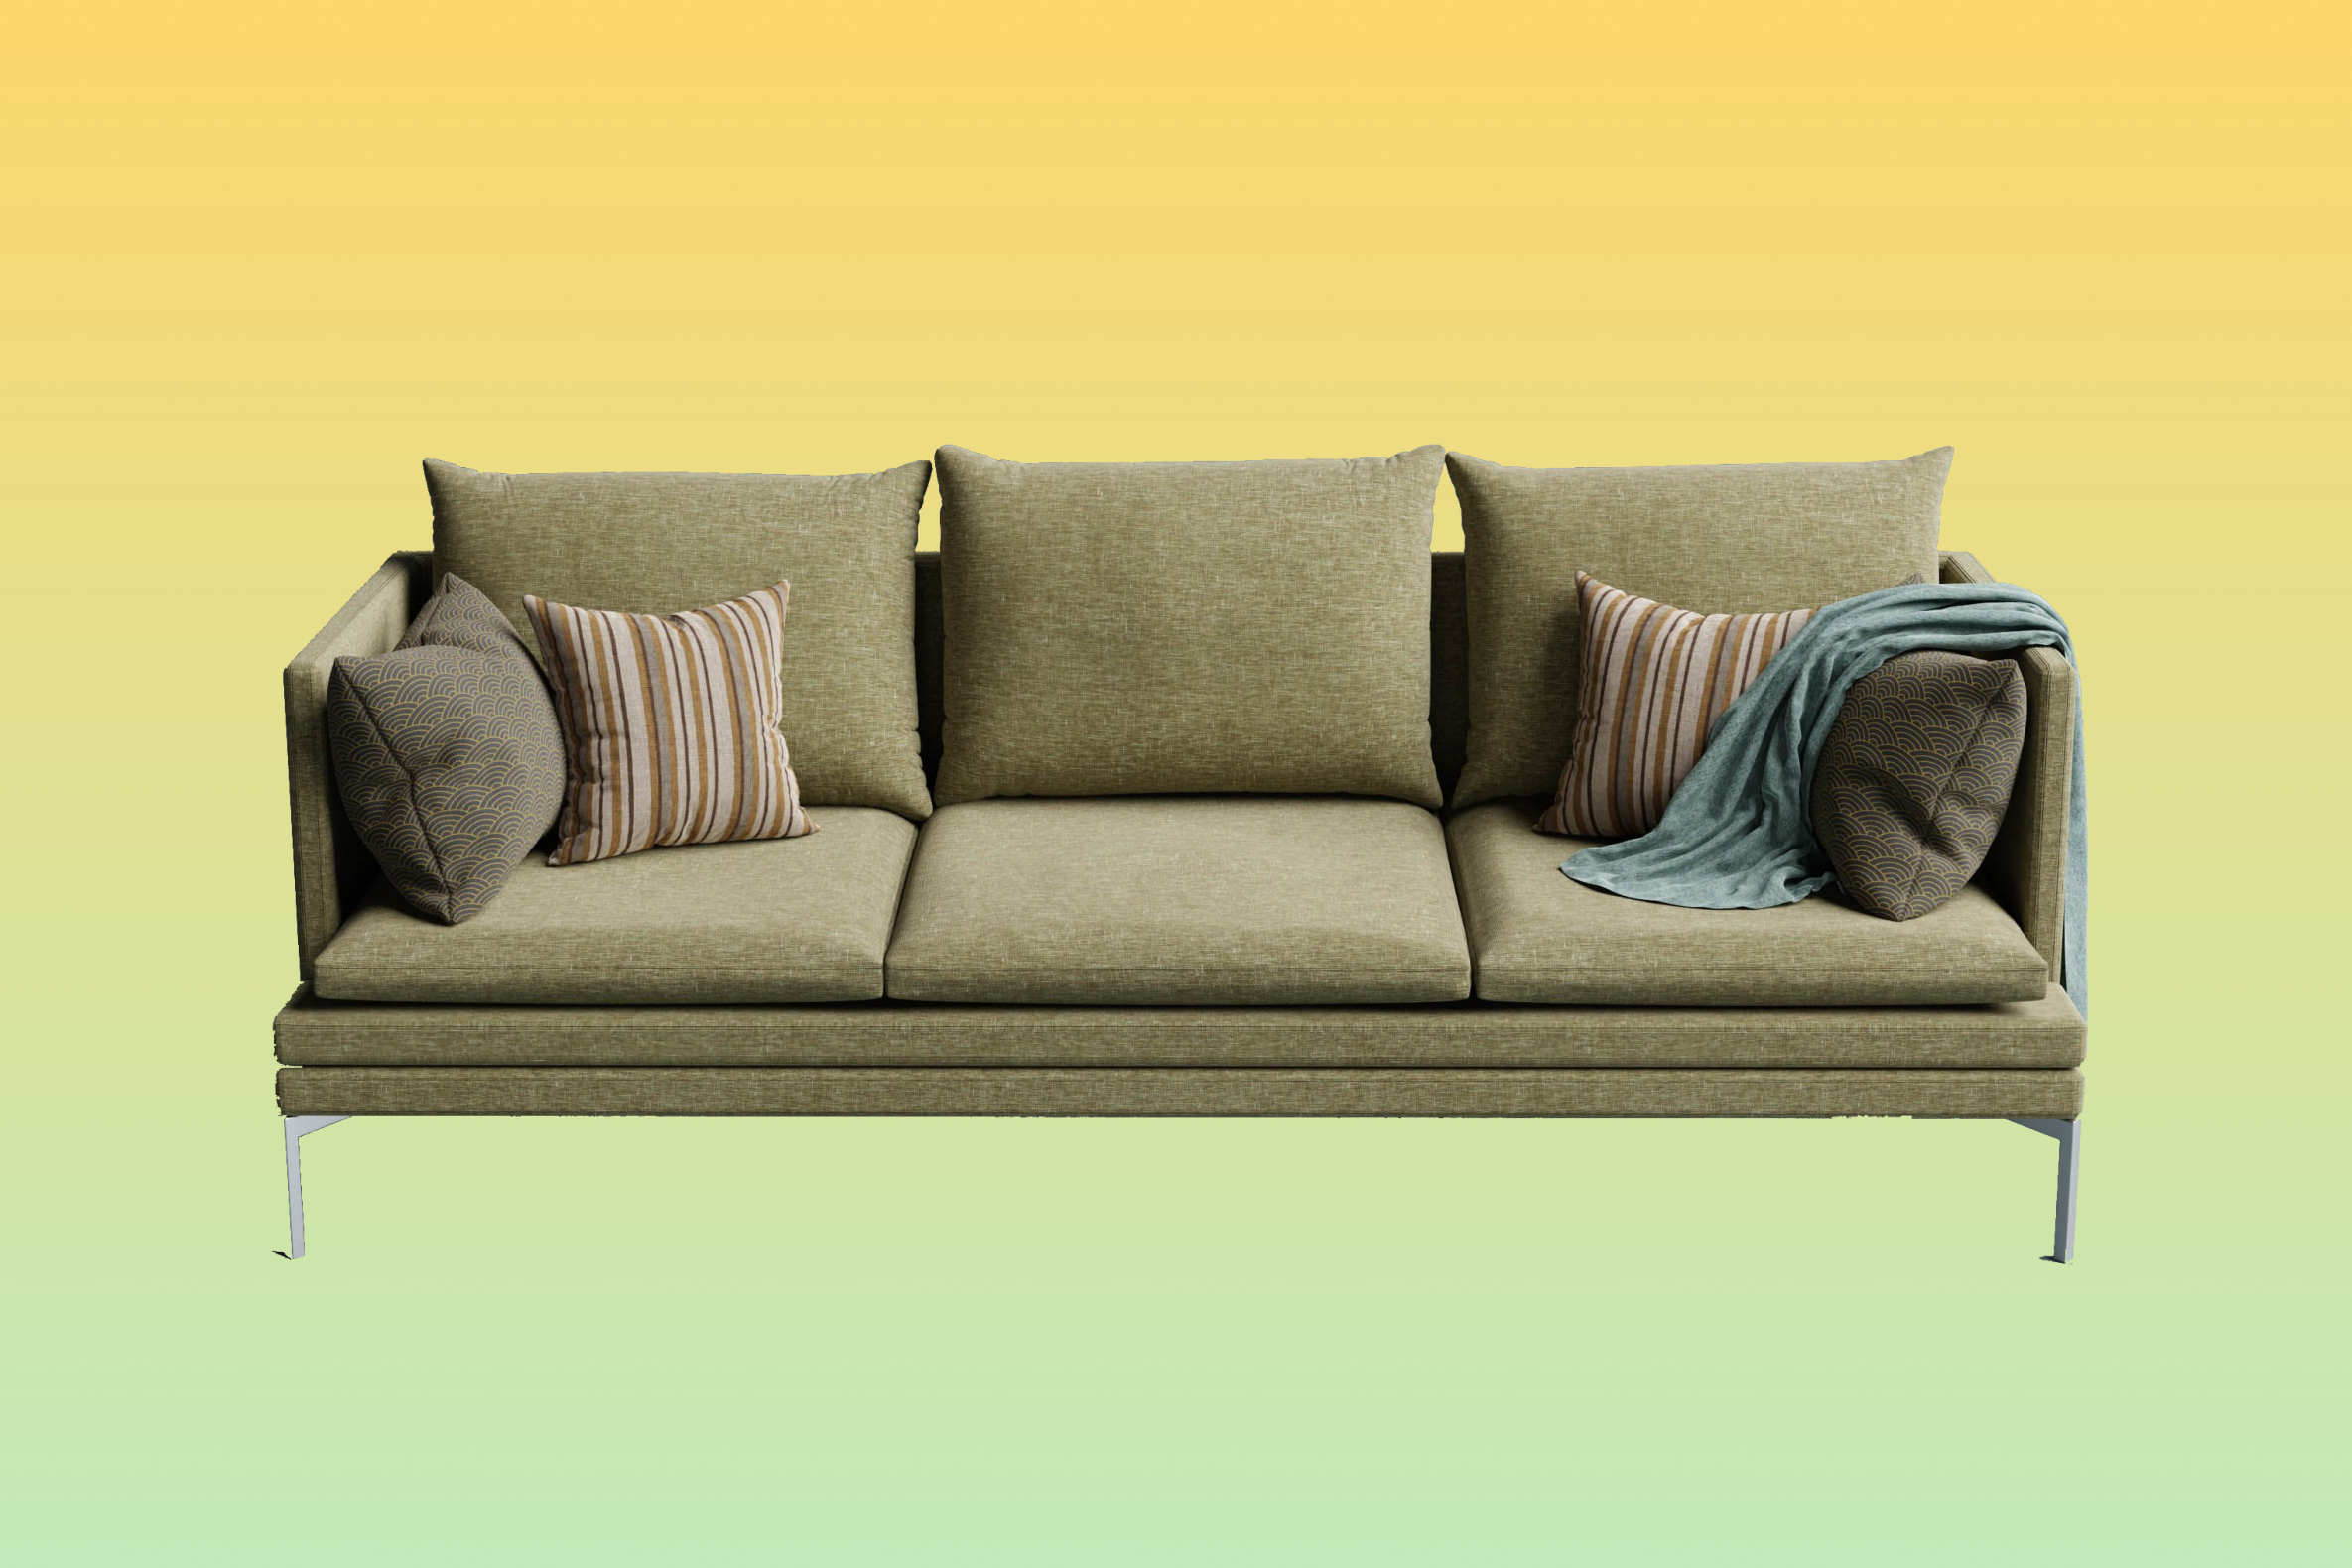 Как обновить диван без перетяжки: бюджетная реставрация